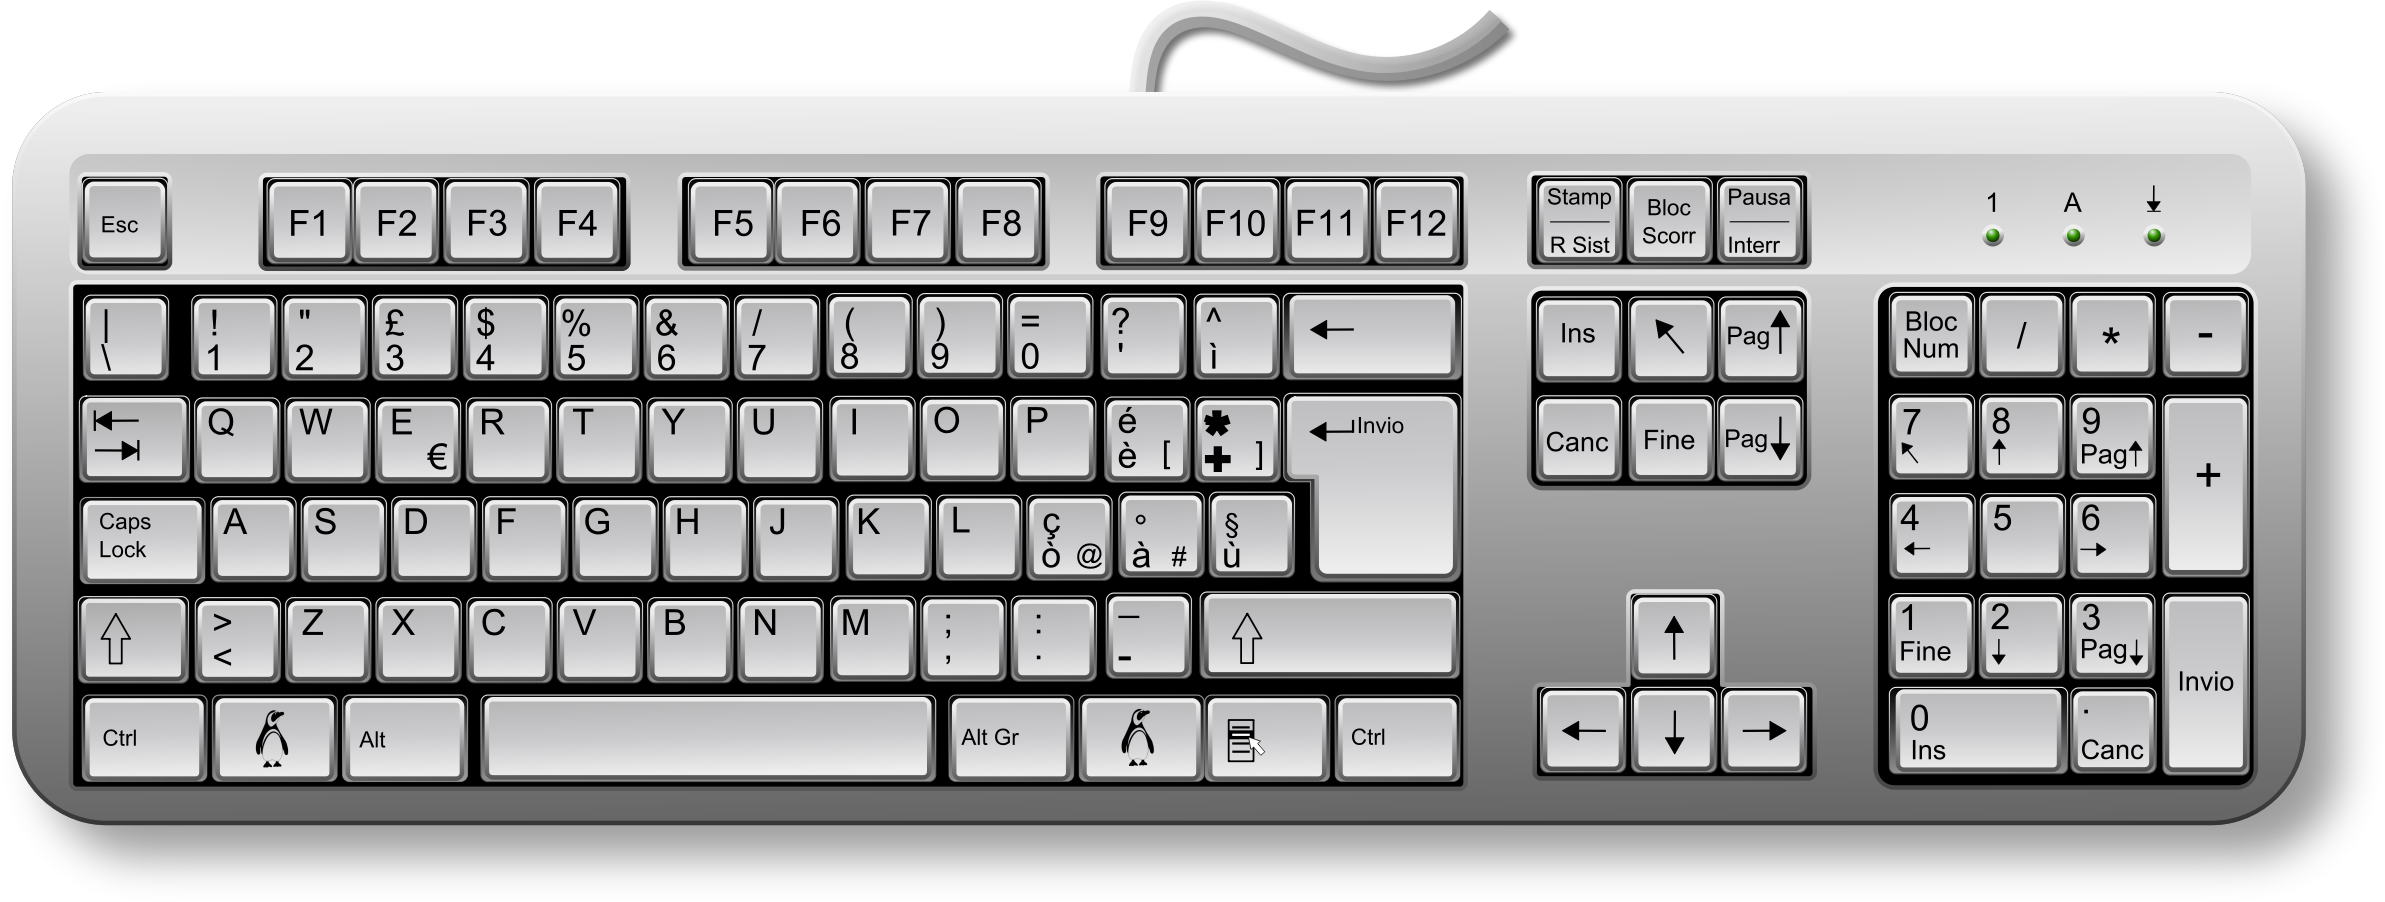 clipart keyboard - photo #16